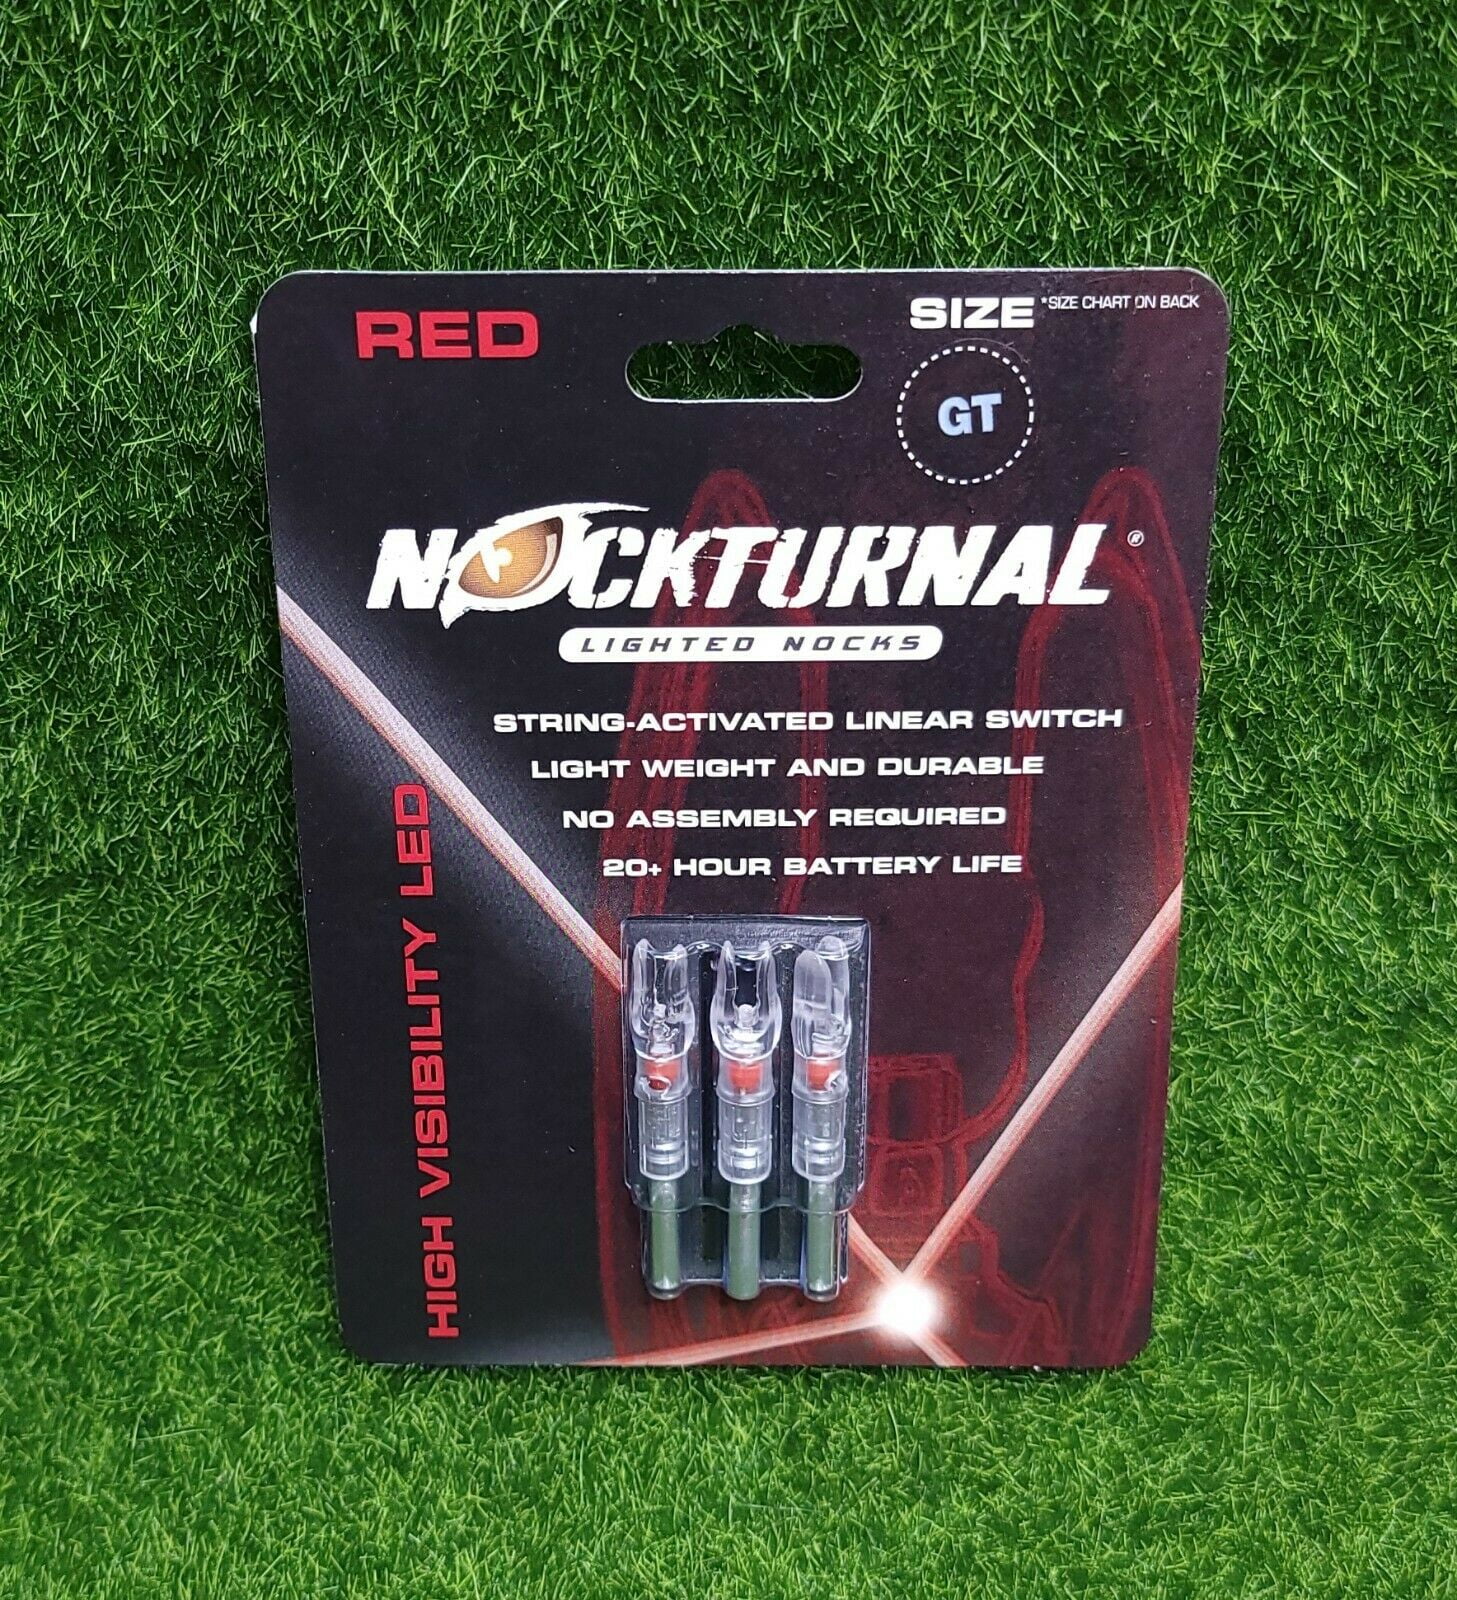 Nockturnal NT-102 Red Lighted Nocks Pack of 3 for sale online 